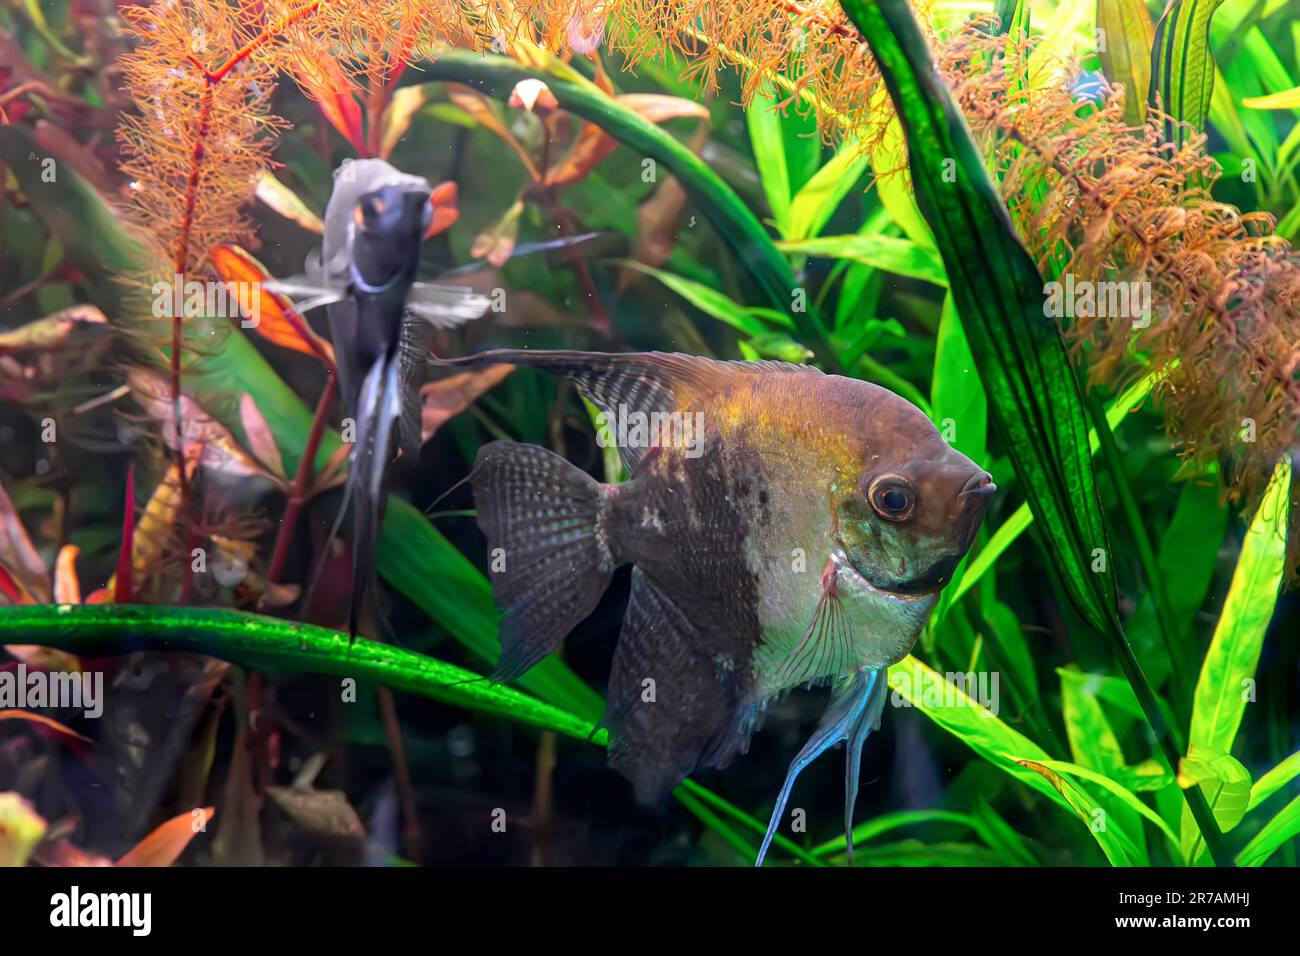 Pesci tropicali Pterophyllum scalare altum, angelfish nuoto in acqua acquario wtih alghe verdi. Pesce bruno nella piscina dell'oceanarium. Organismo acquatico, unde Foto Stock